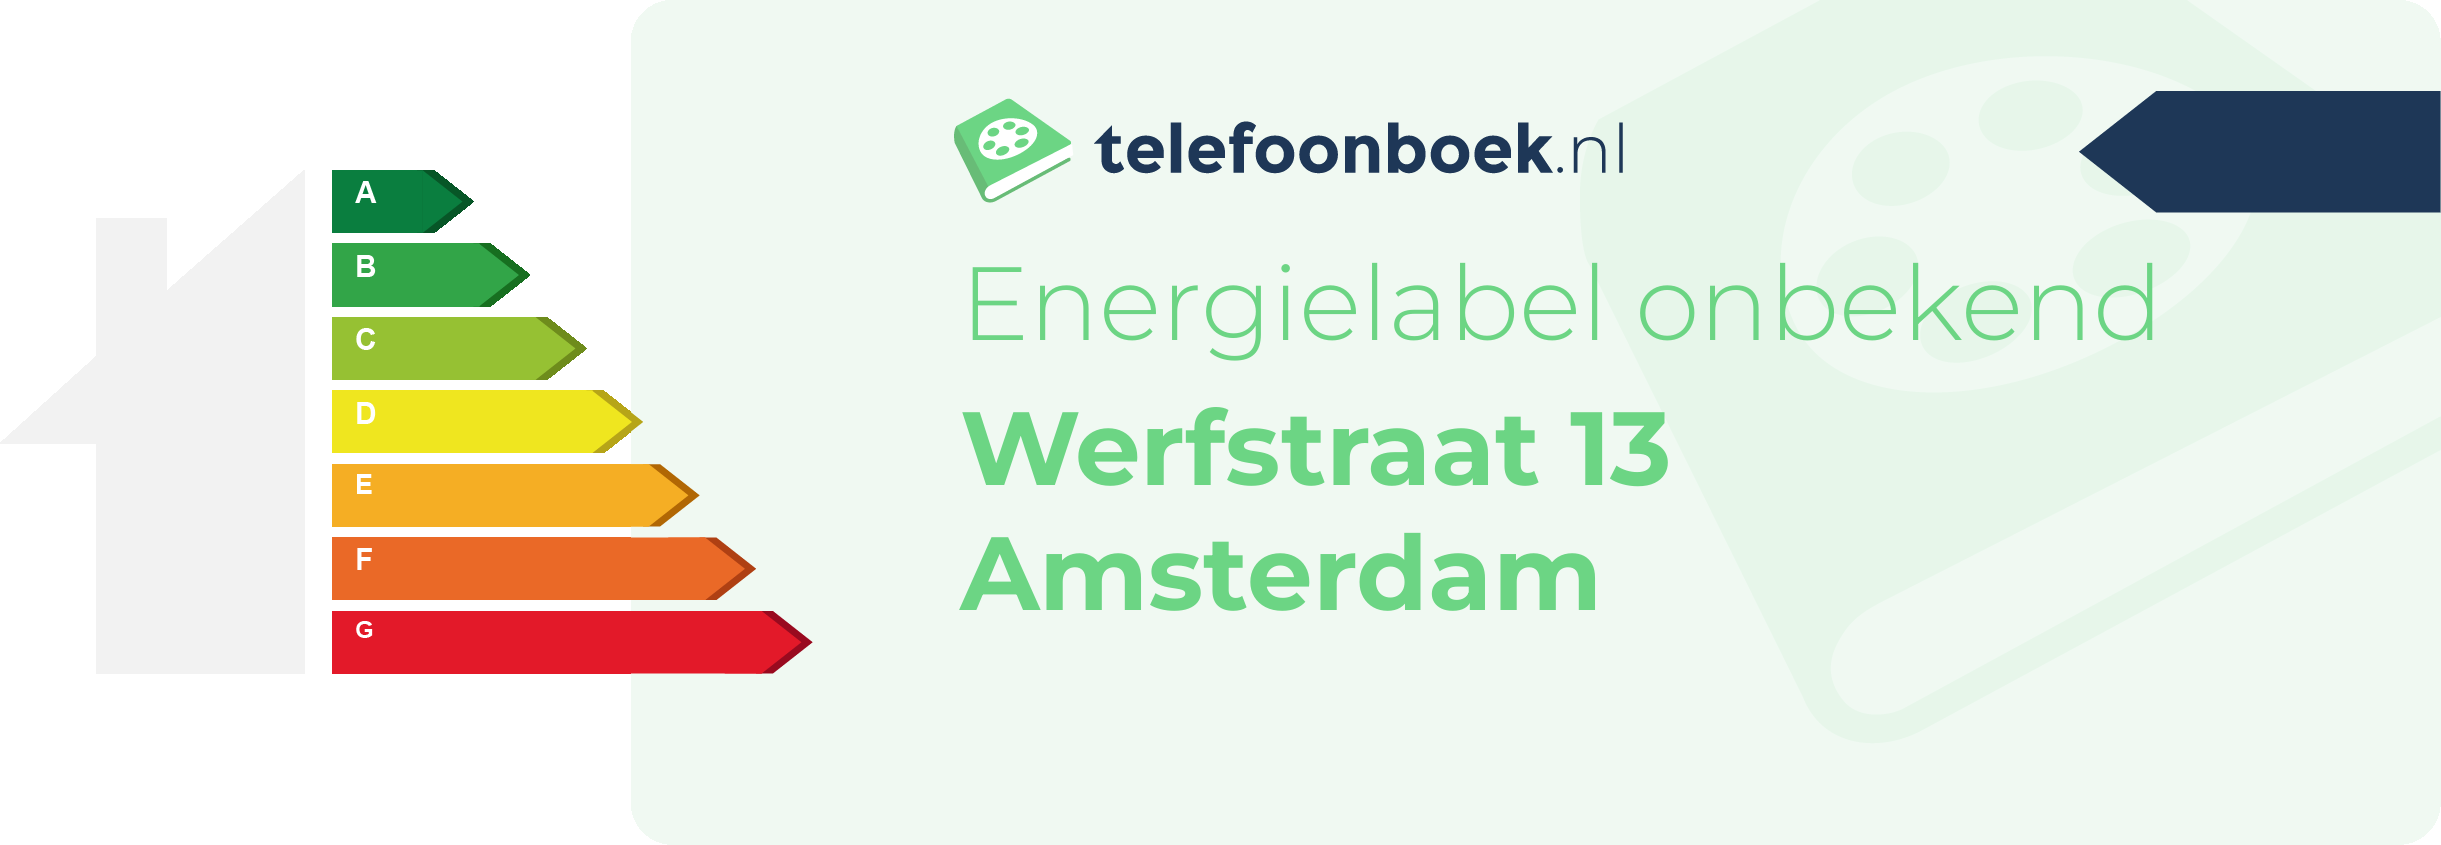 Energielabel Werfstraat 13 Amsterdam